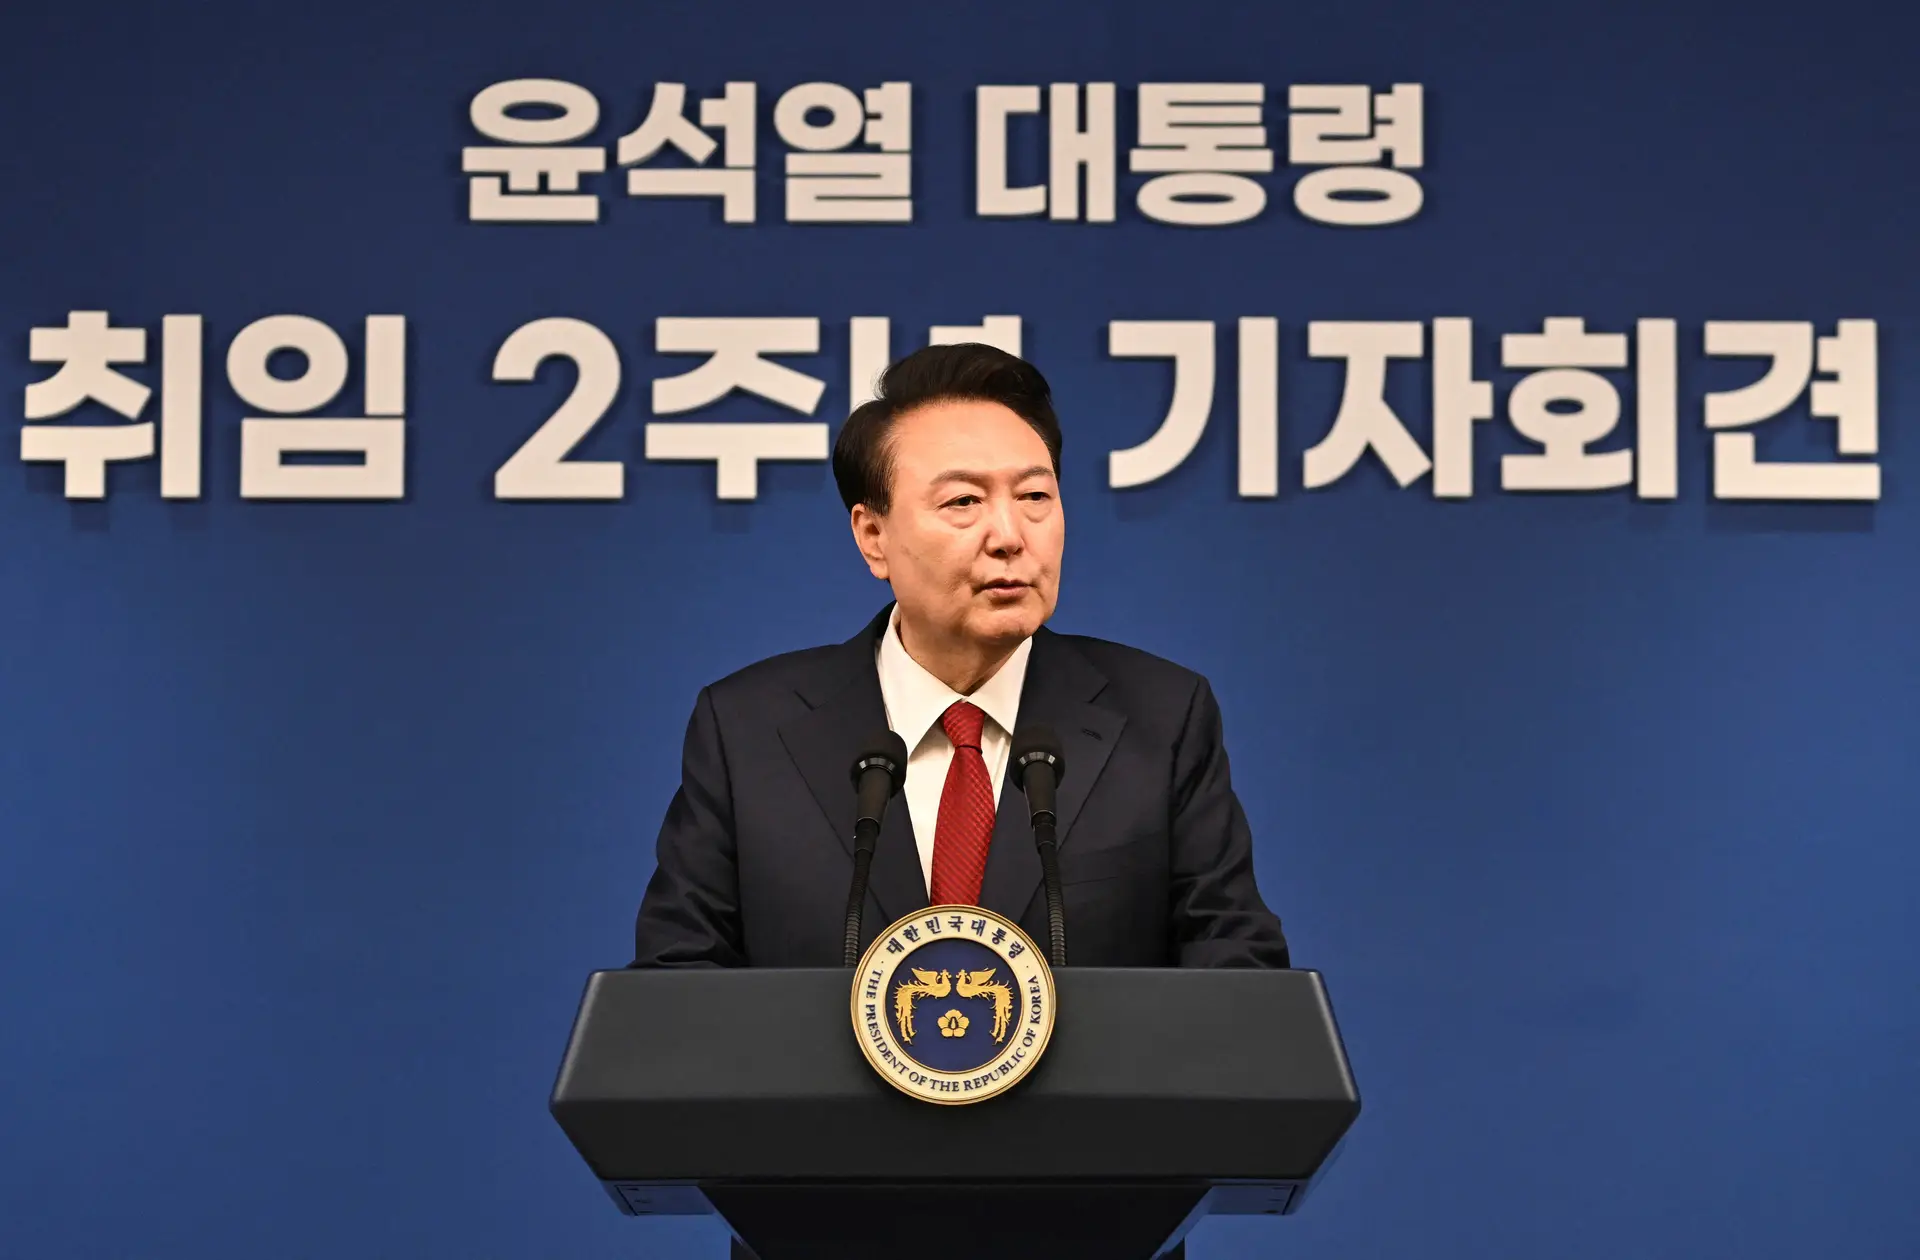 Presidente sul-coreano promete laços estreitos com Kiev e "boa relação" com Moscovo